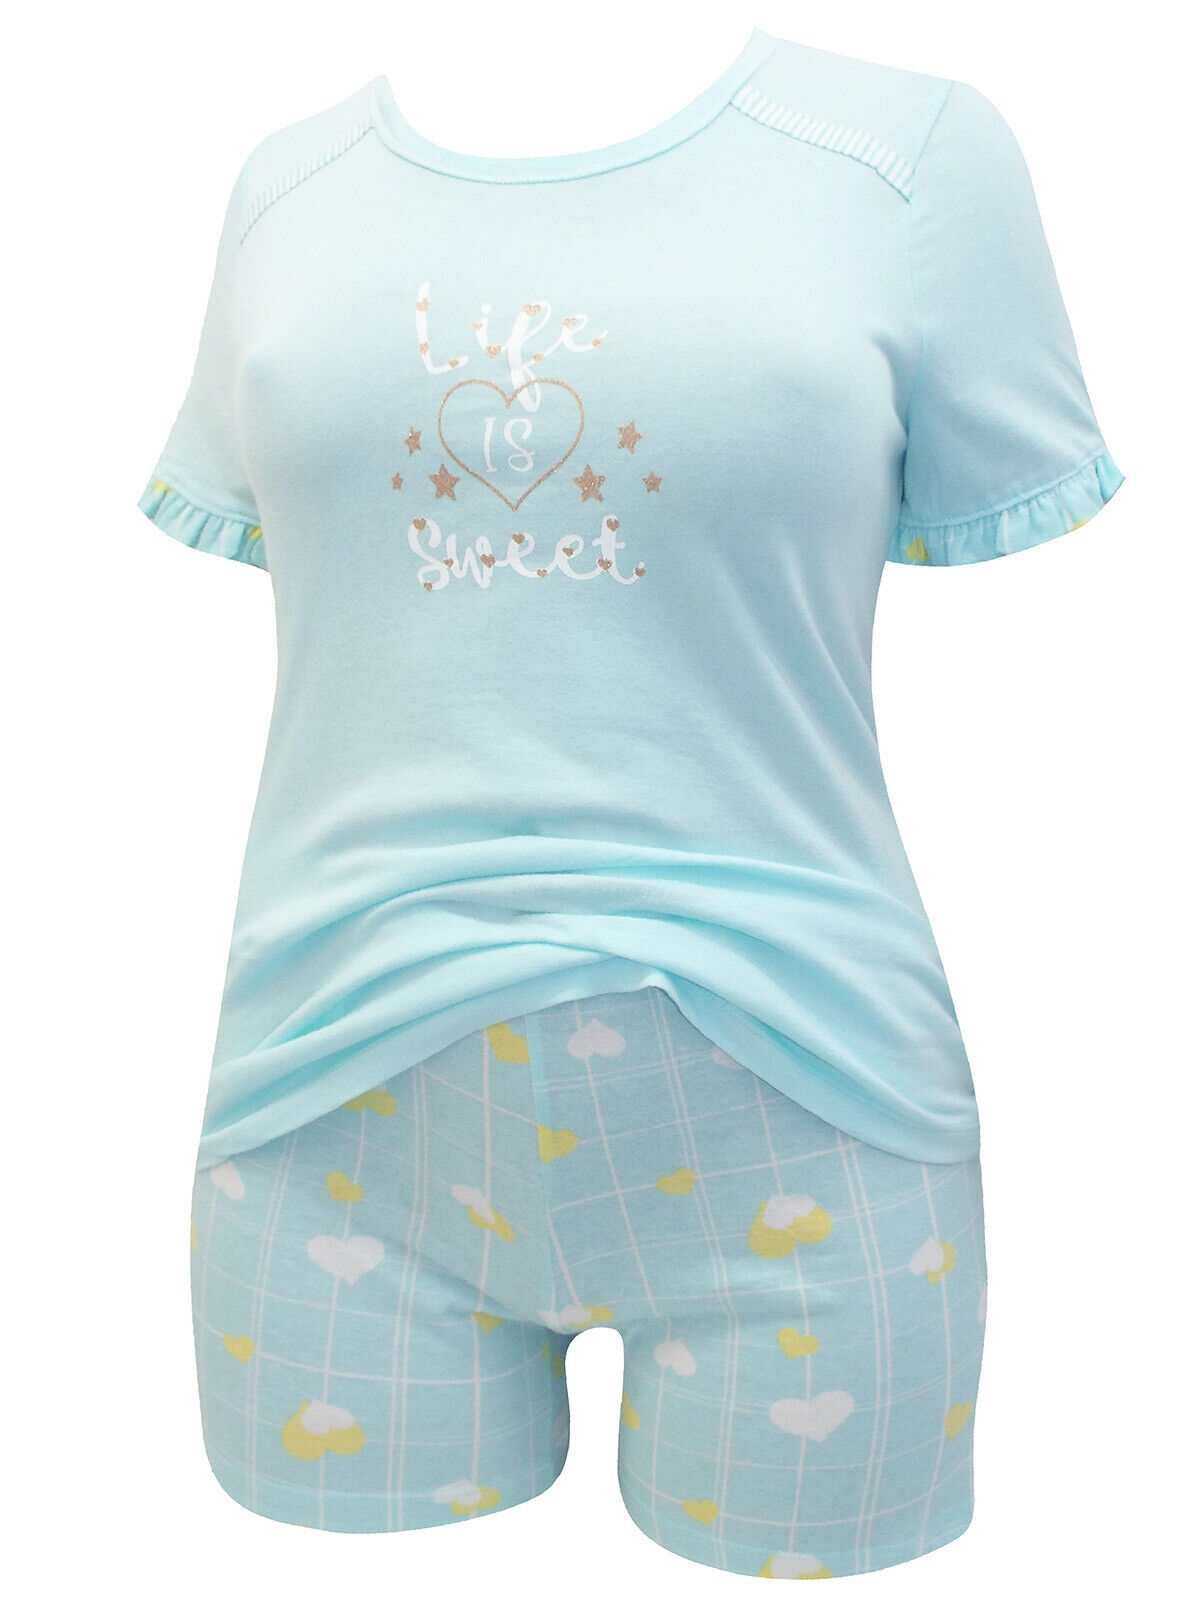 Italian Mi-a-mi Aqua Cotton Heart Frill Trim Shorts Pyjama Set 10 12 14 16 20